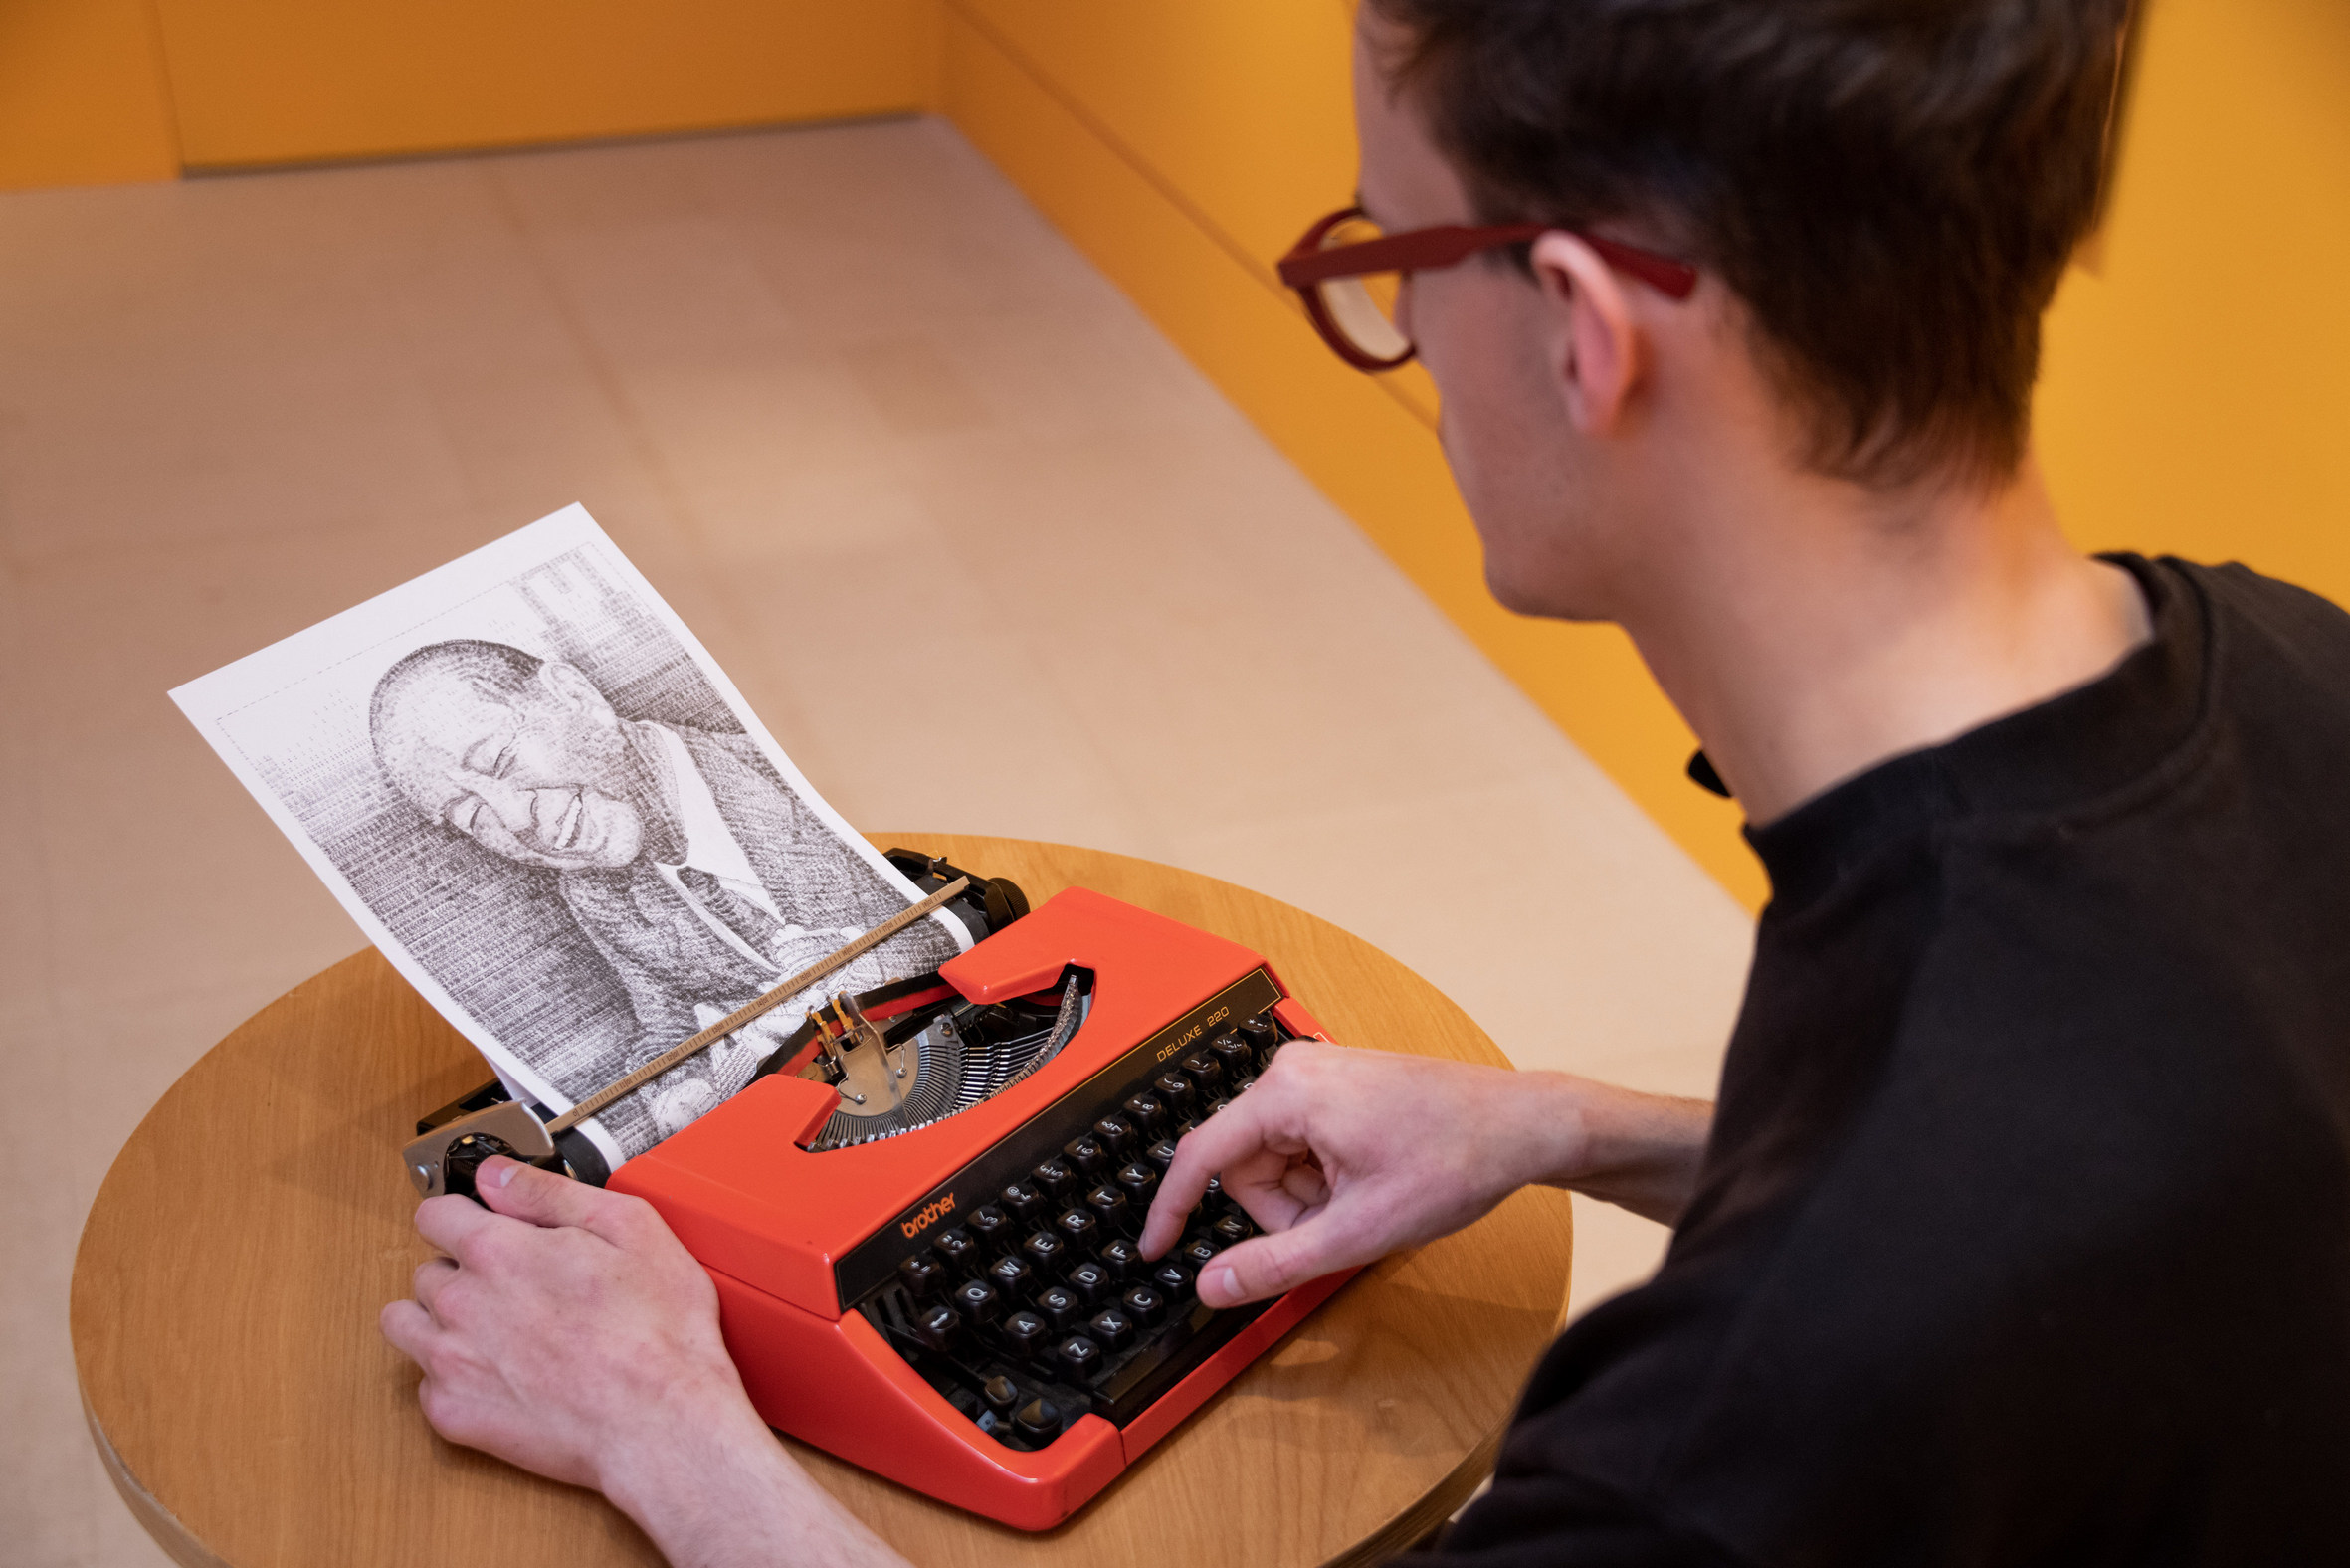 「跳出格子吧！」特展「機器超展開」打字機展區，用打字機畫畫，藝術家庫克現場創作奇美創辦人許文龍的肖像畫。 (2)